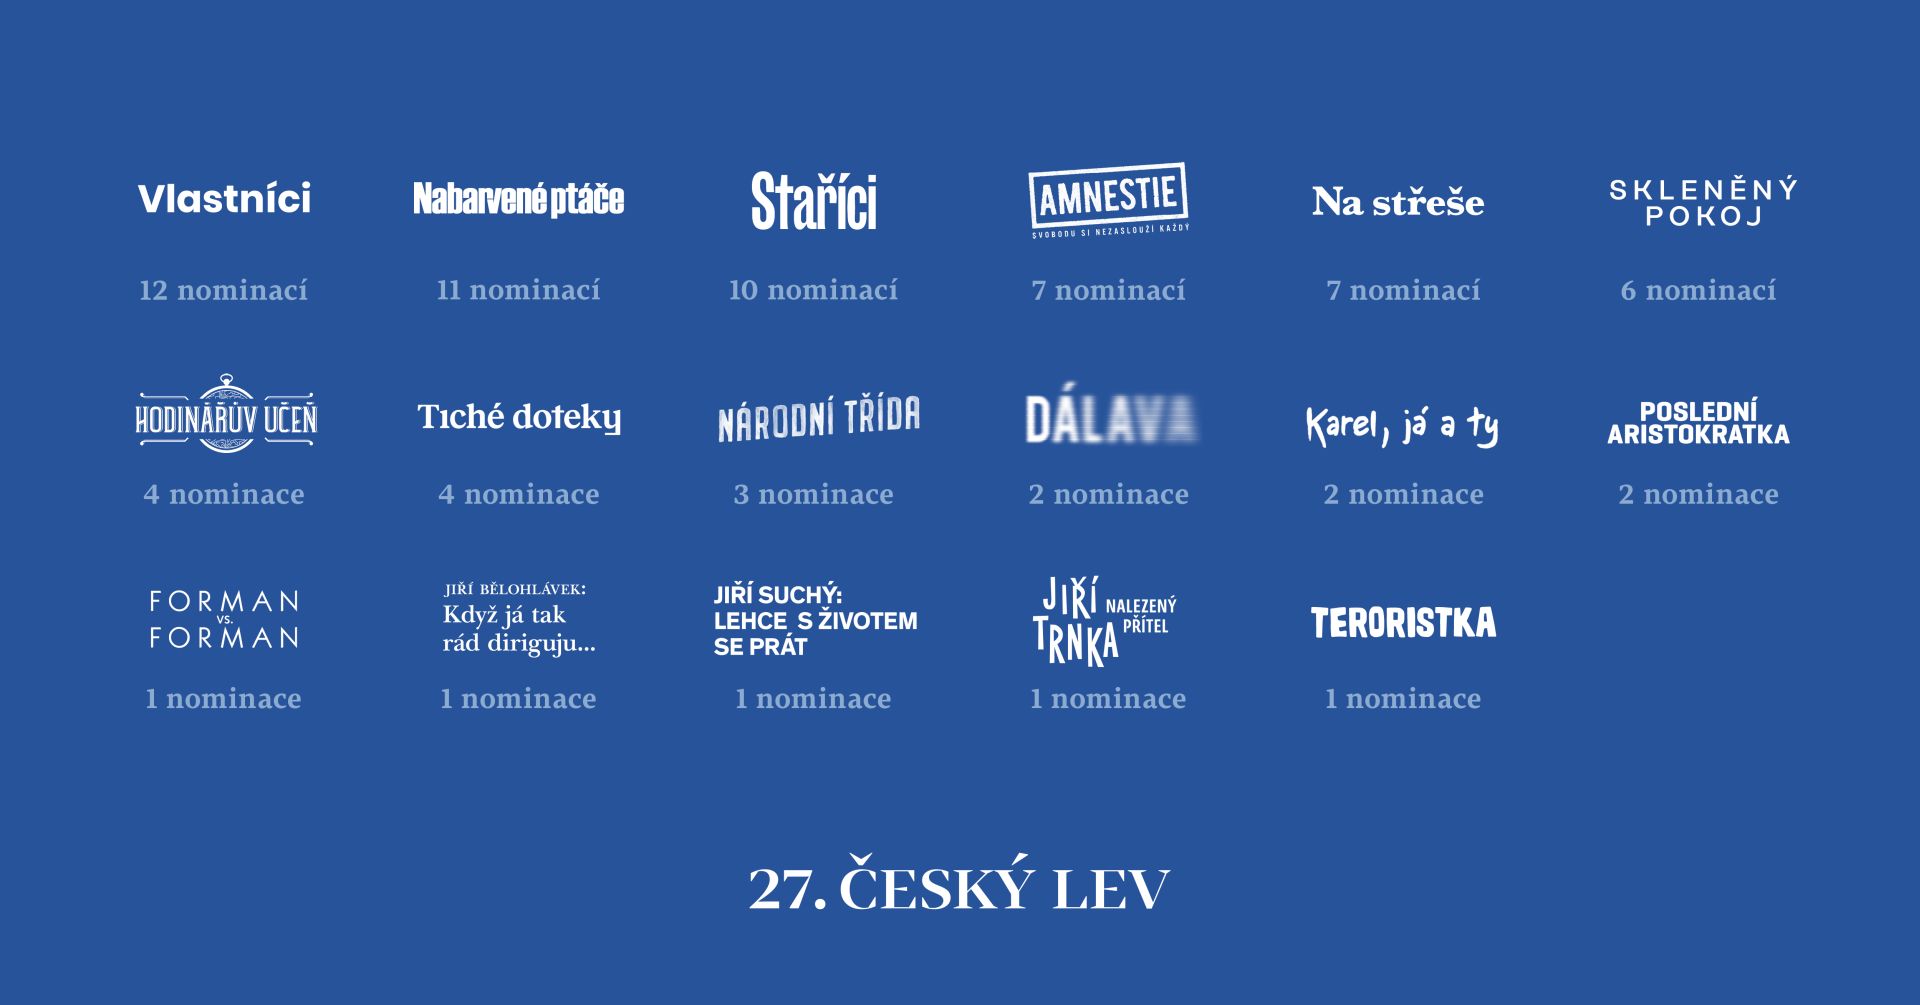 Kde můžete vidět filmy nominované na České lvy?